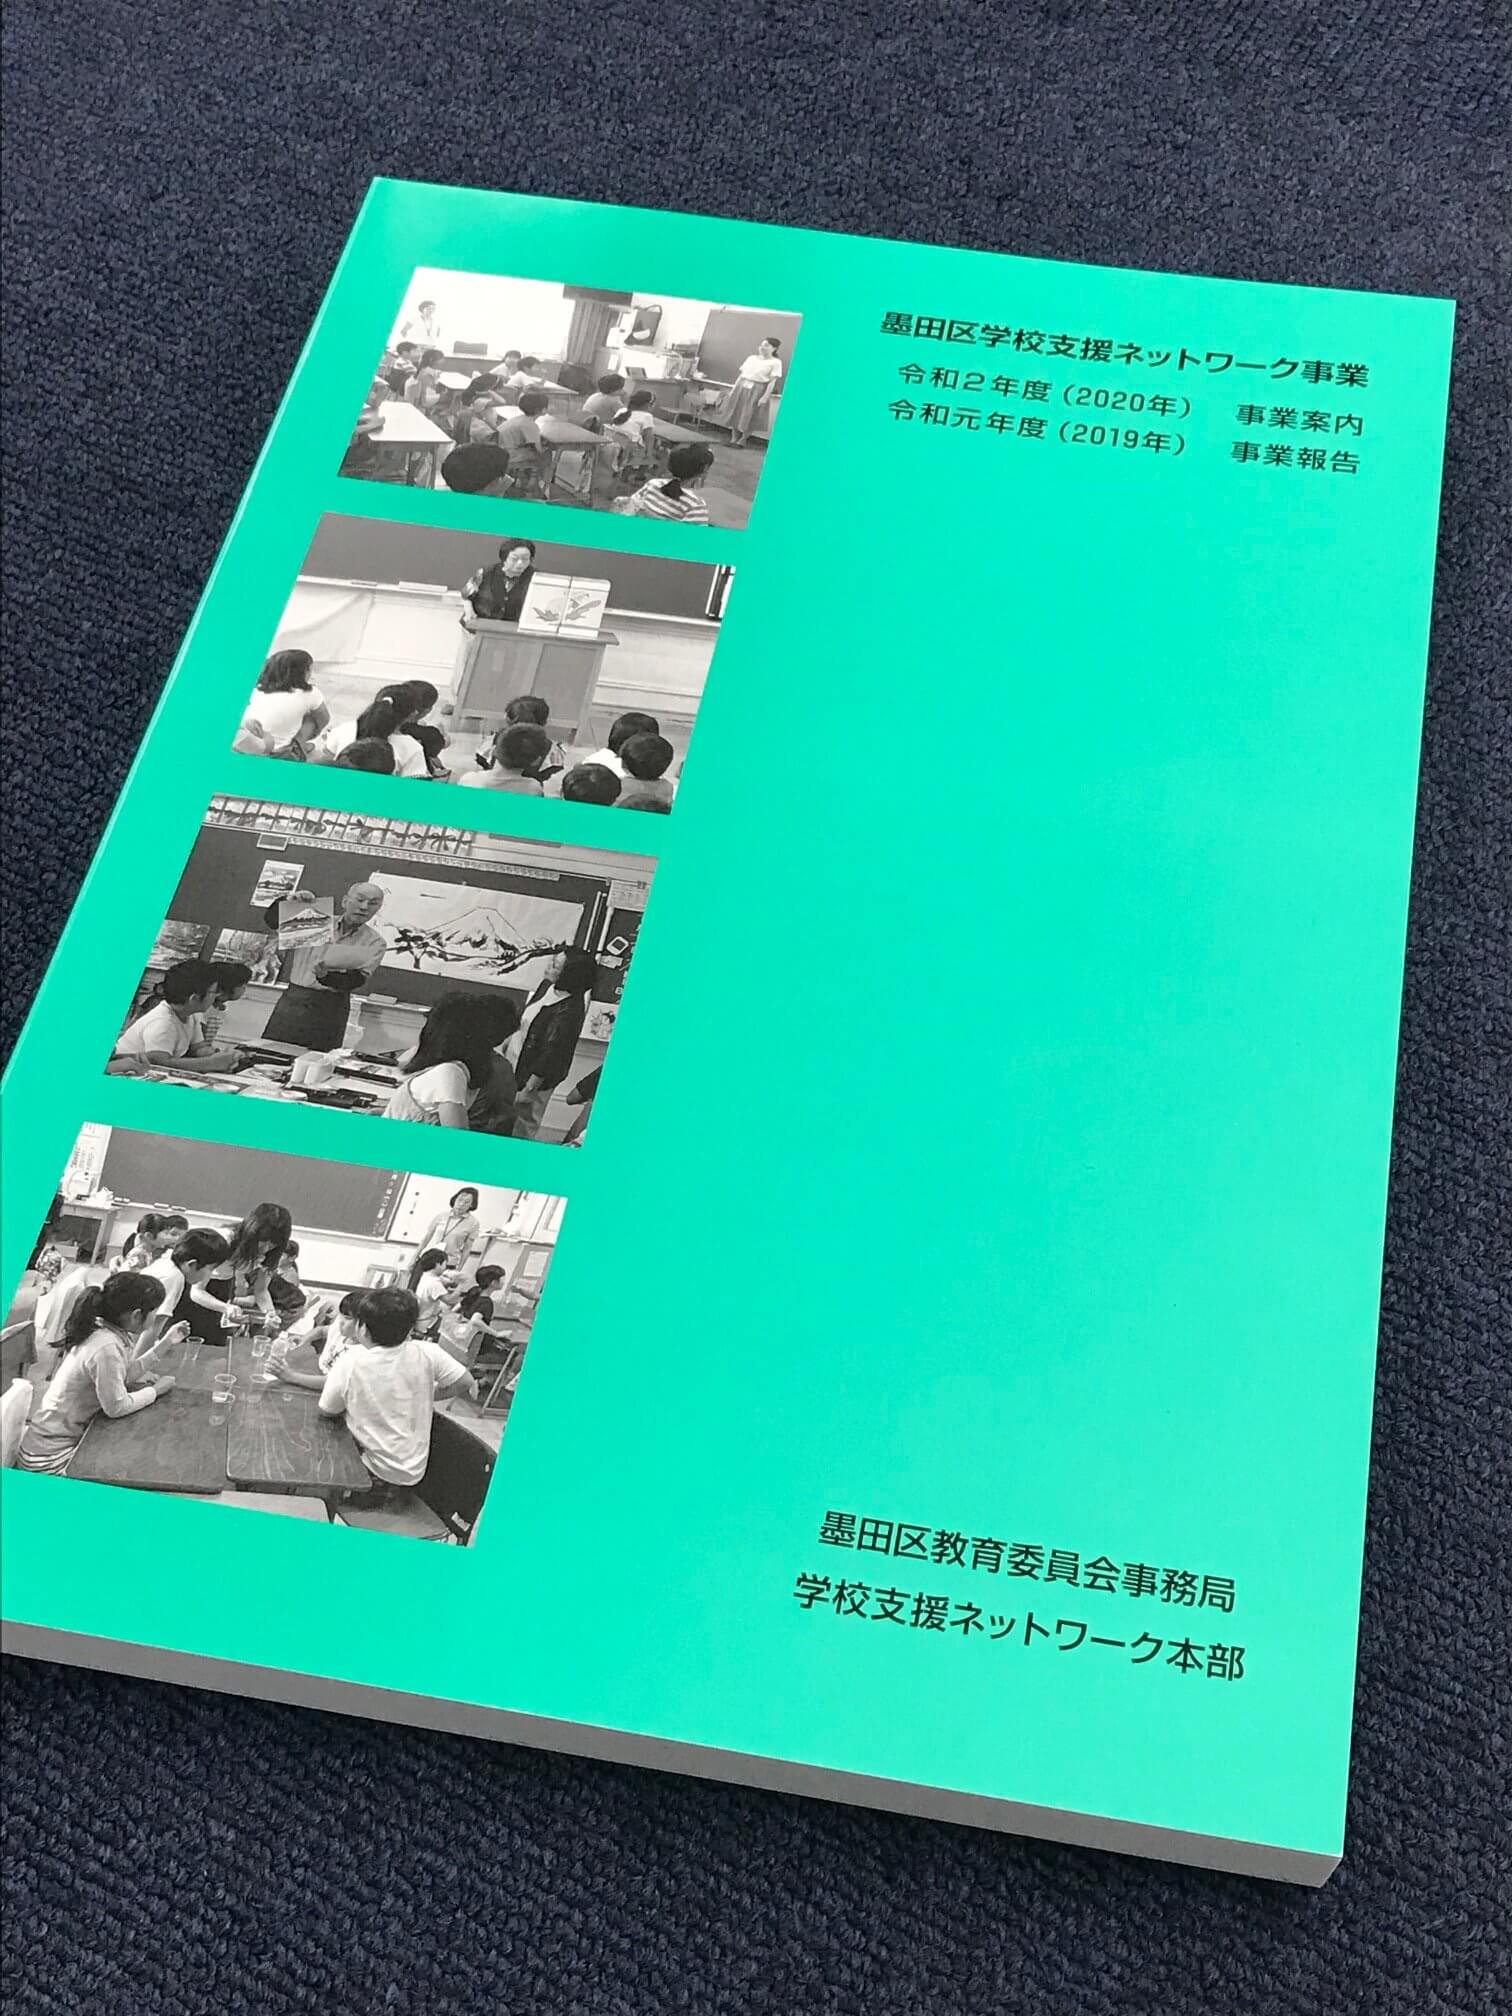 墨田区教育委員会事務局 学校支援ネットワーク本部発行の冊子